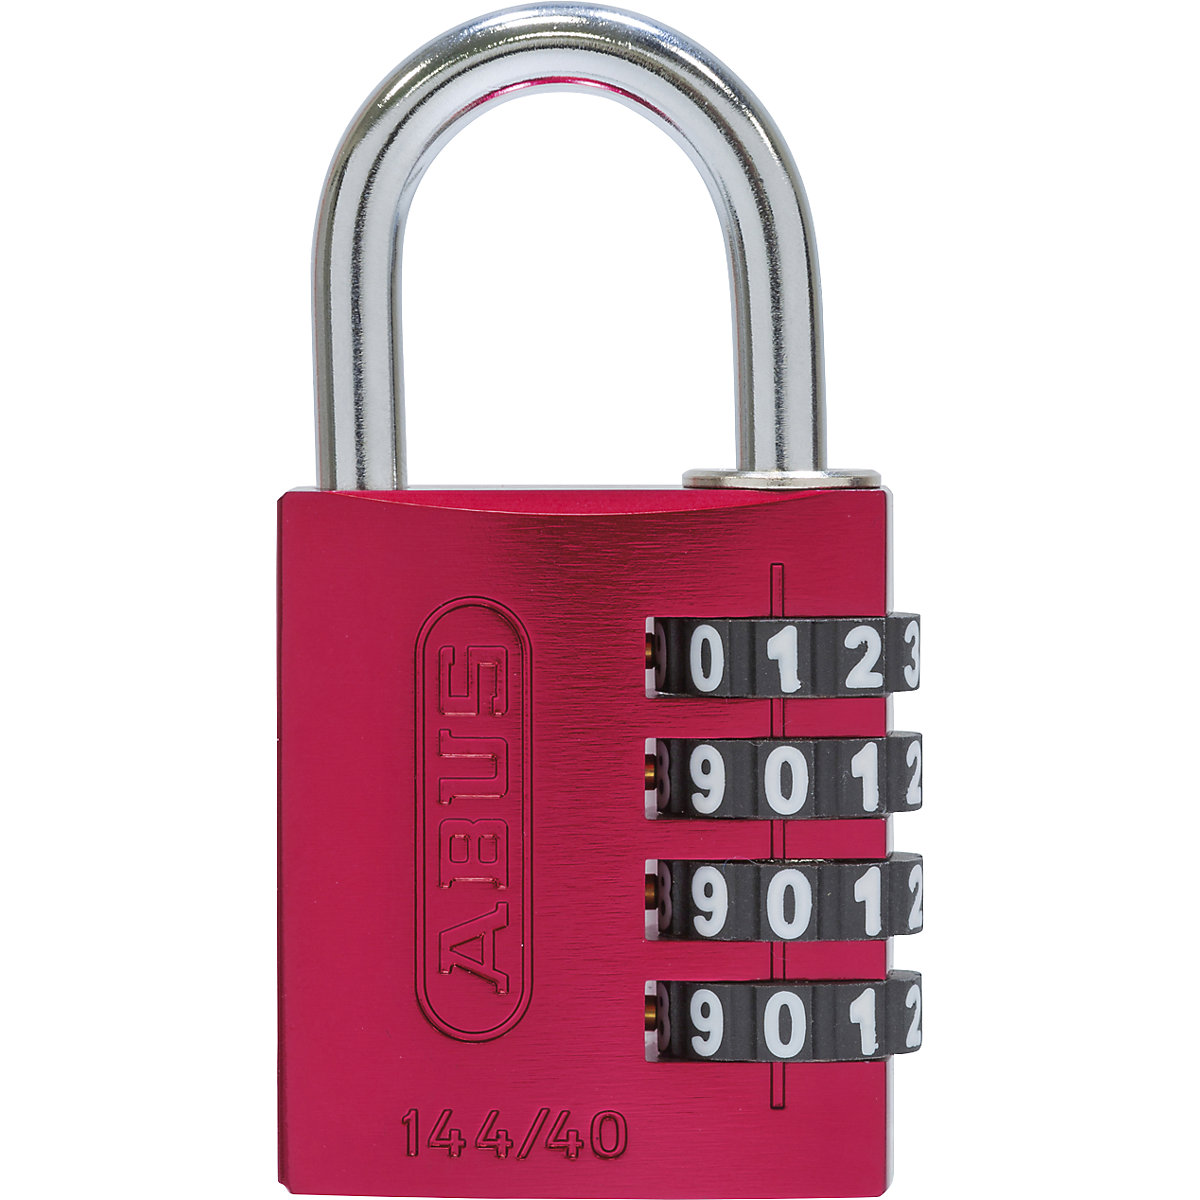 Cijferslot, aluminium – ABUS, 144/40 lock-tag, VE = 6 stuks, rood-1